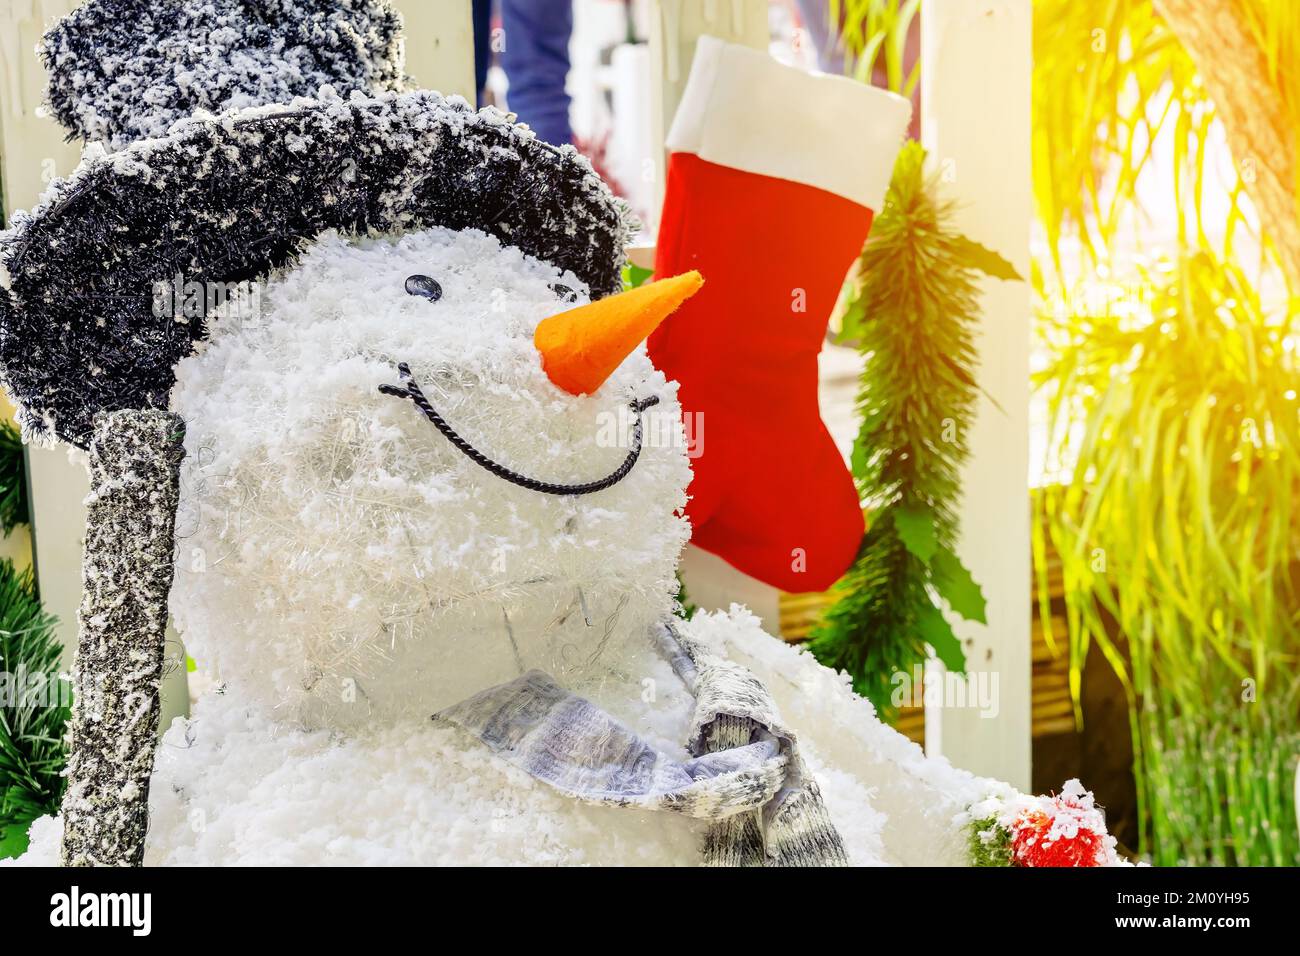 Hermosa Decoración Decorativa De Muñeco De Nieve Artificial En La Entrada  De Una Pequeña Comunidad De Viviendas Muñeco De Nieve Parado Frente Al  Parque Público En El Concepto De Navidad Y Año